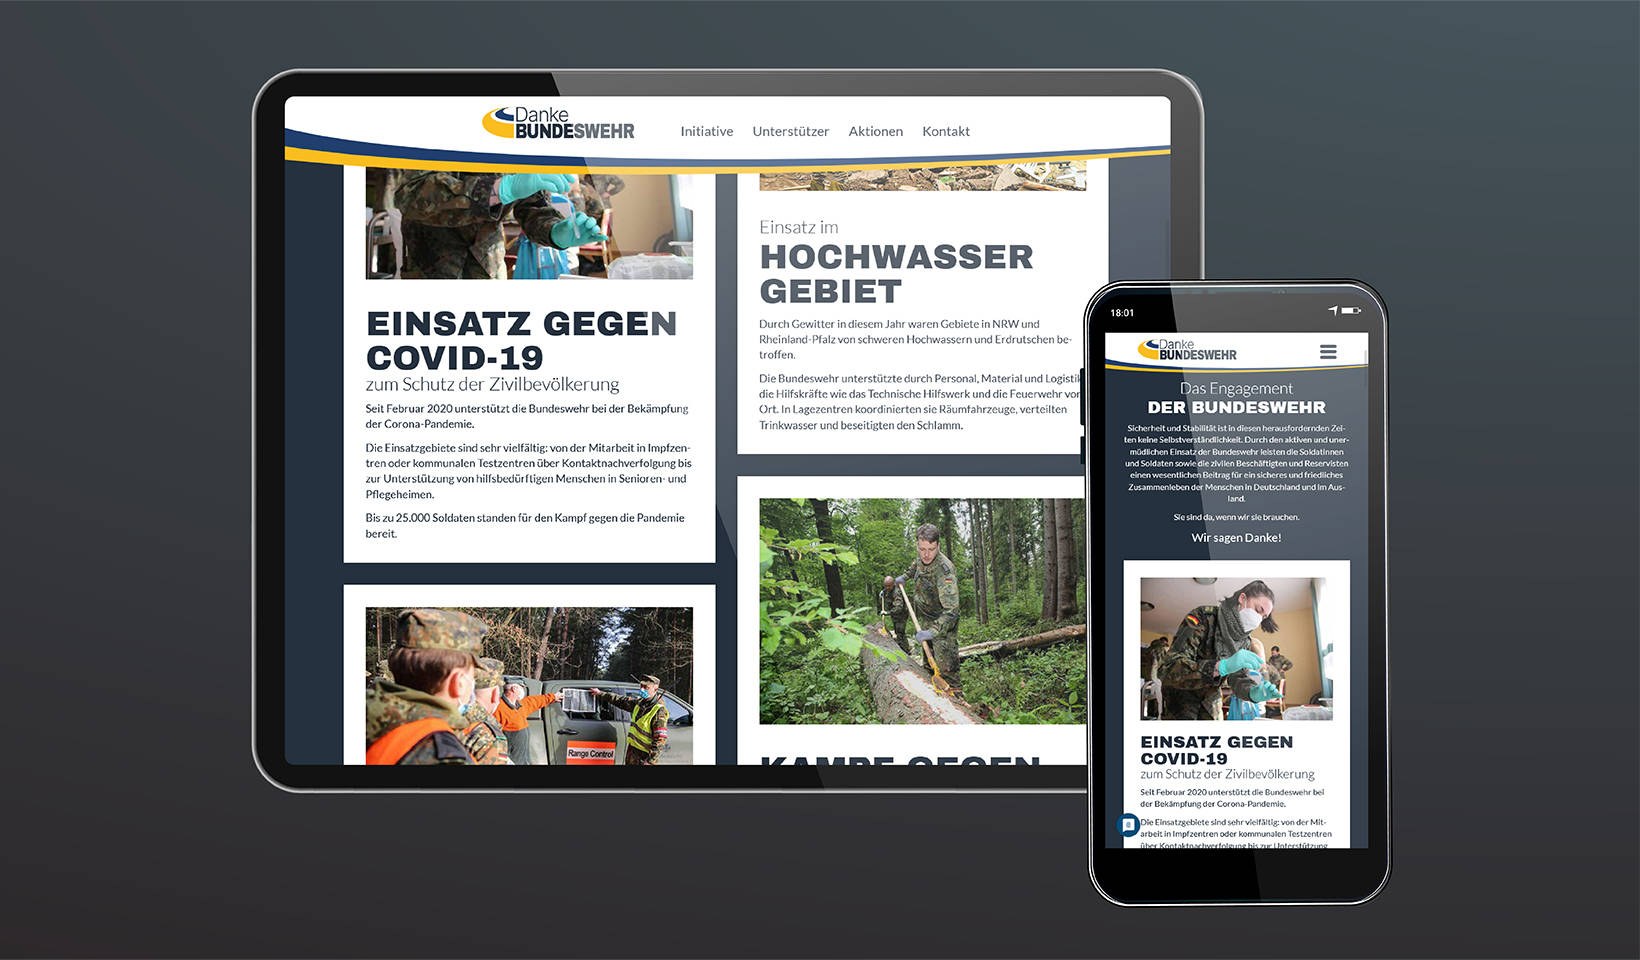 Konzeption, Design und Umsetzung einer kampagnen-spezifischen Website für die Bundeswehr Kampagne